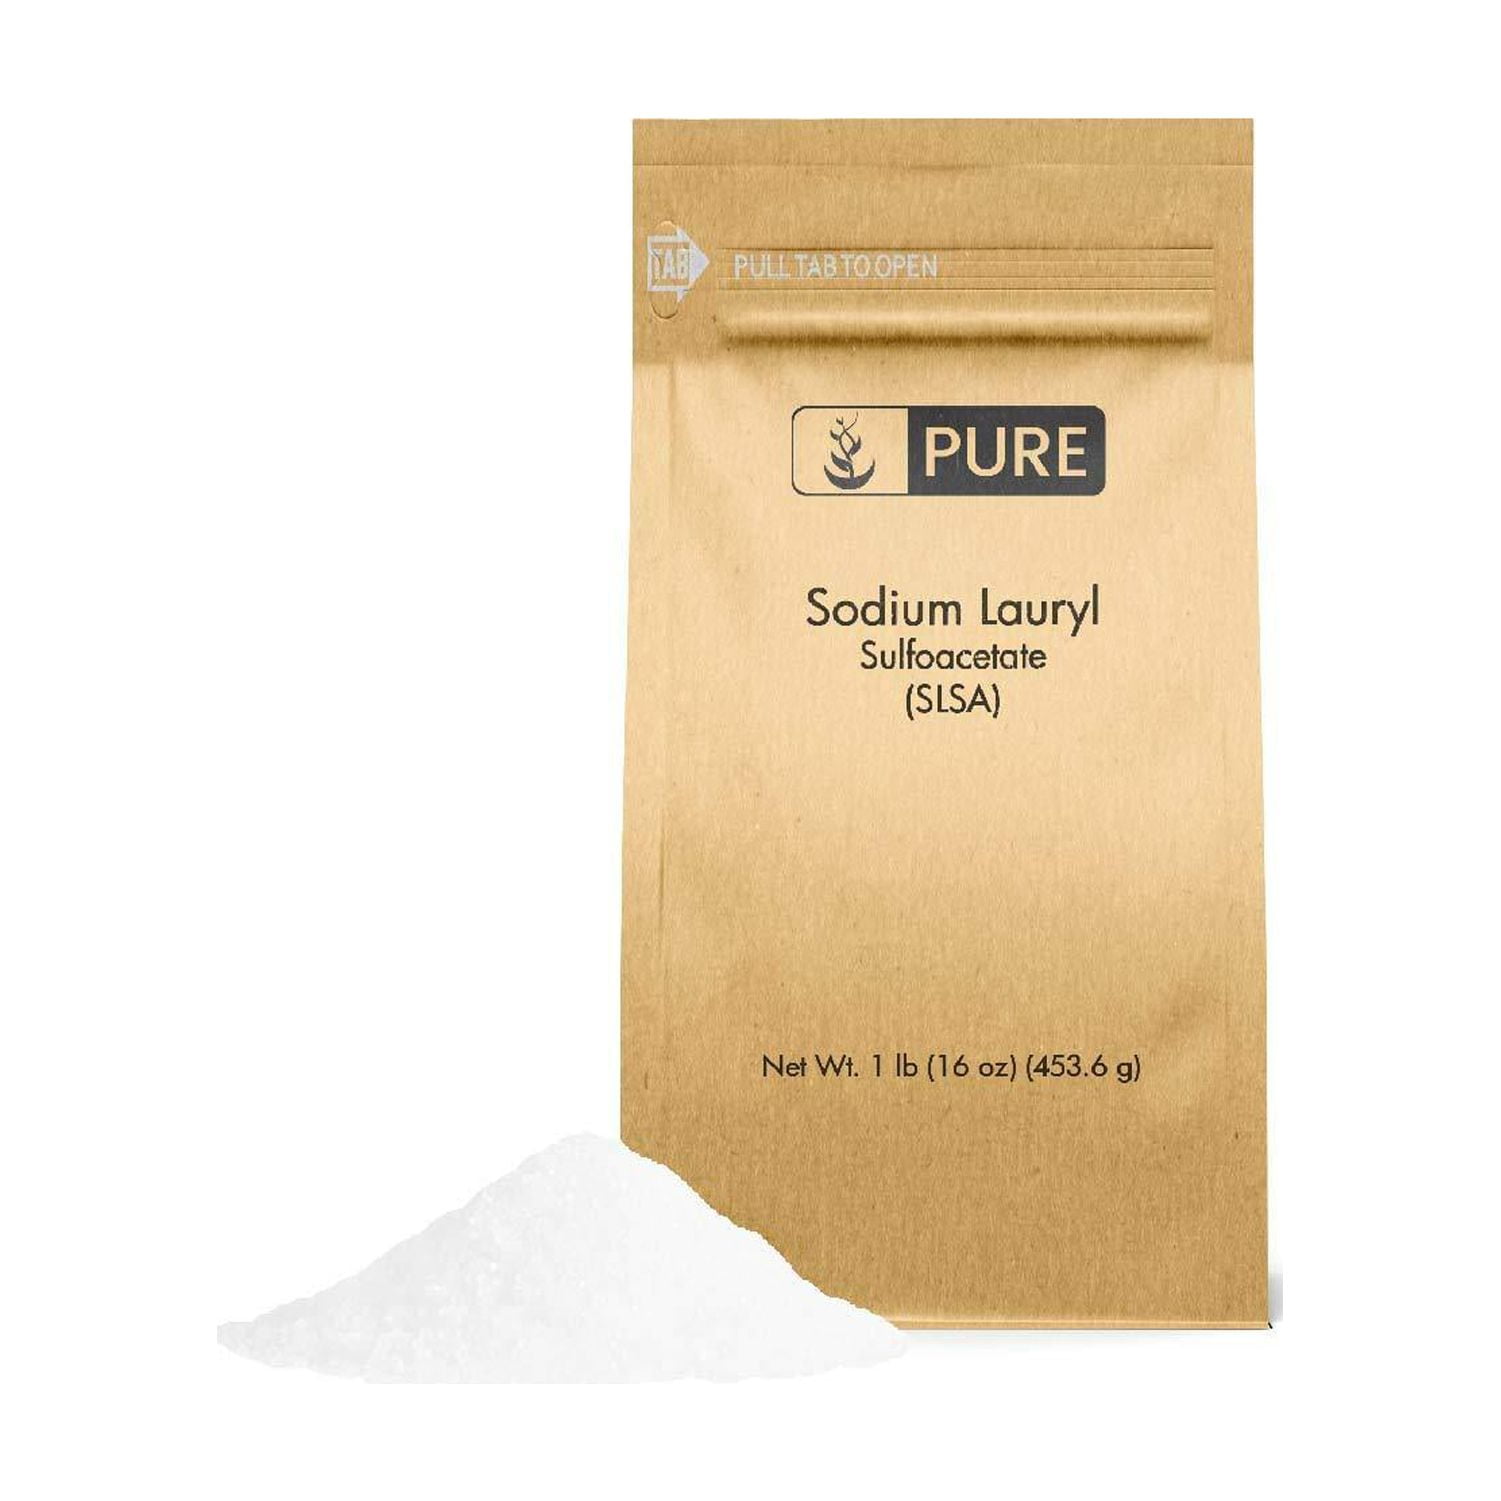 SLSa Powder, 100% Pure Sodium Lauryl Sulfoacetate, Great for Making Bath  Bombs, Bubble Bath, Bath Truffles, 16 oz